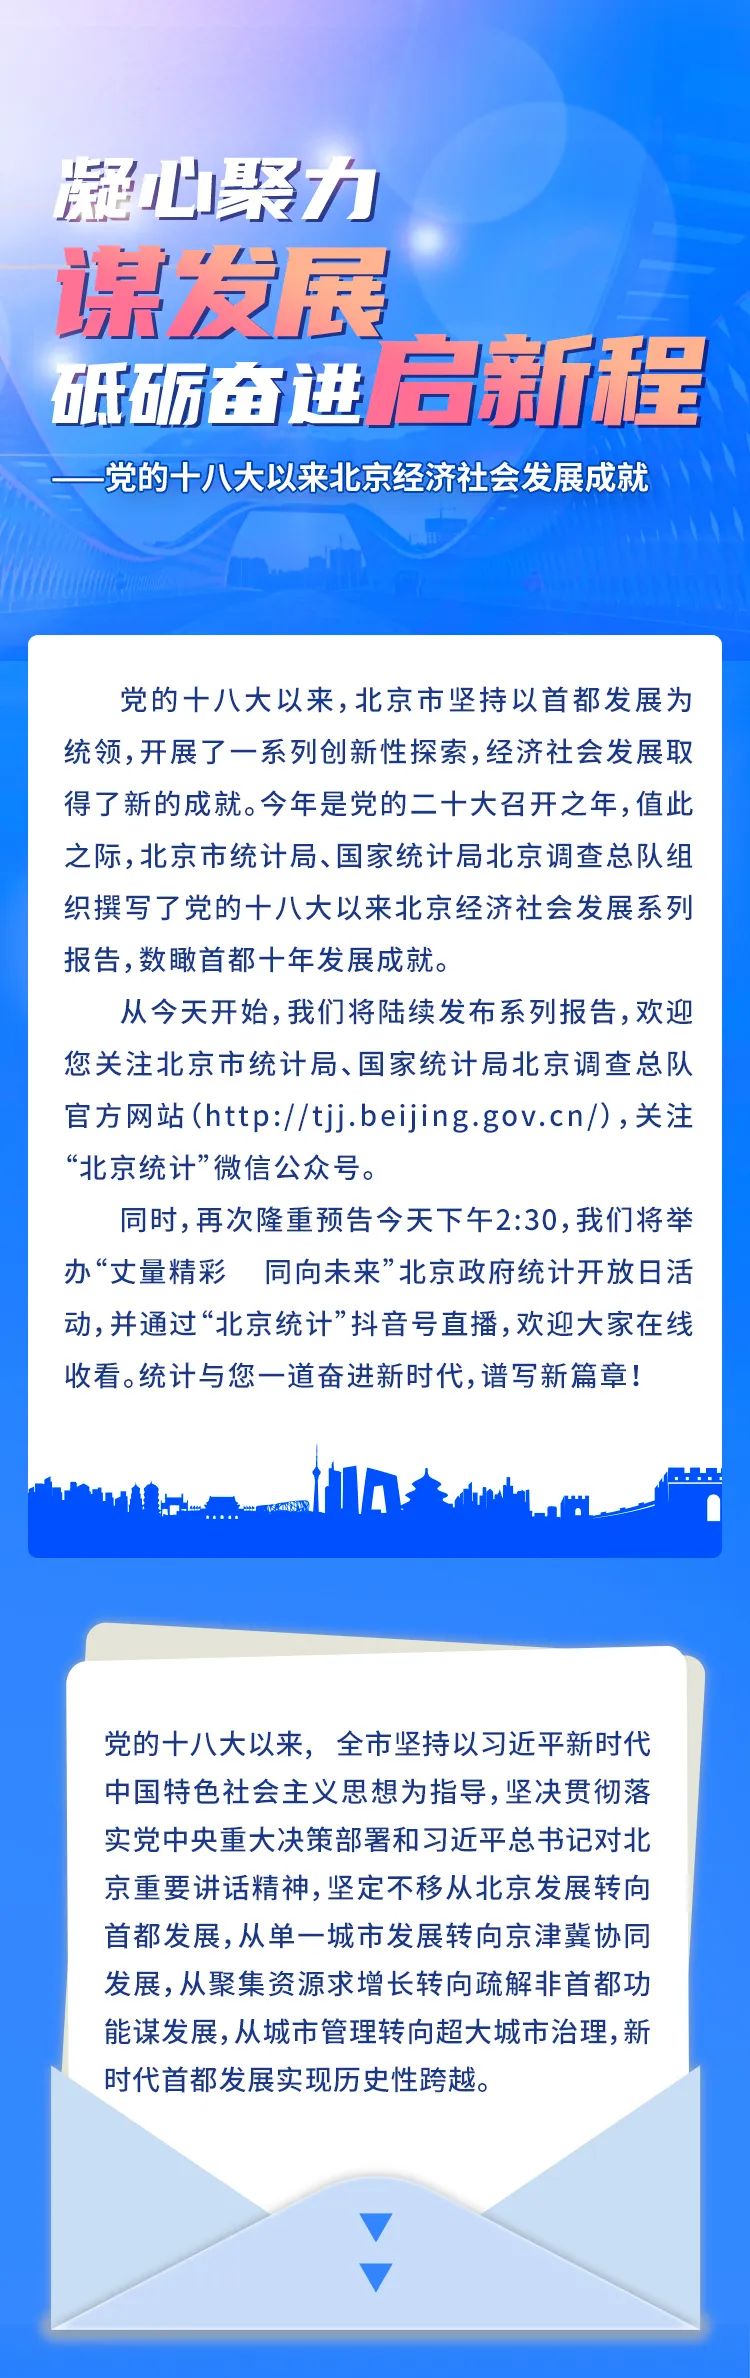 一圖讀懂丨黨的十八大以來北京經濟社會發展成就系列報告之一